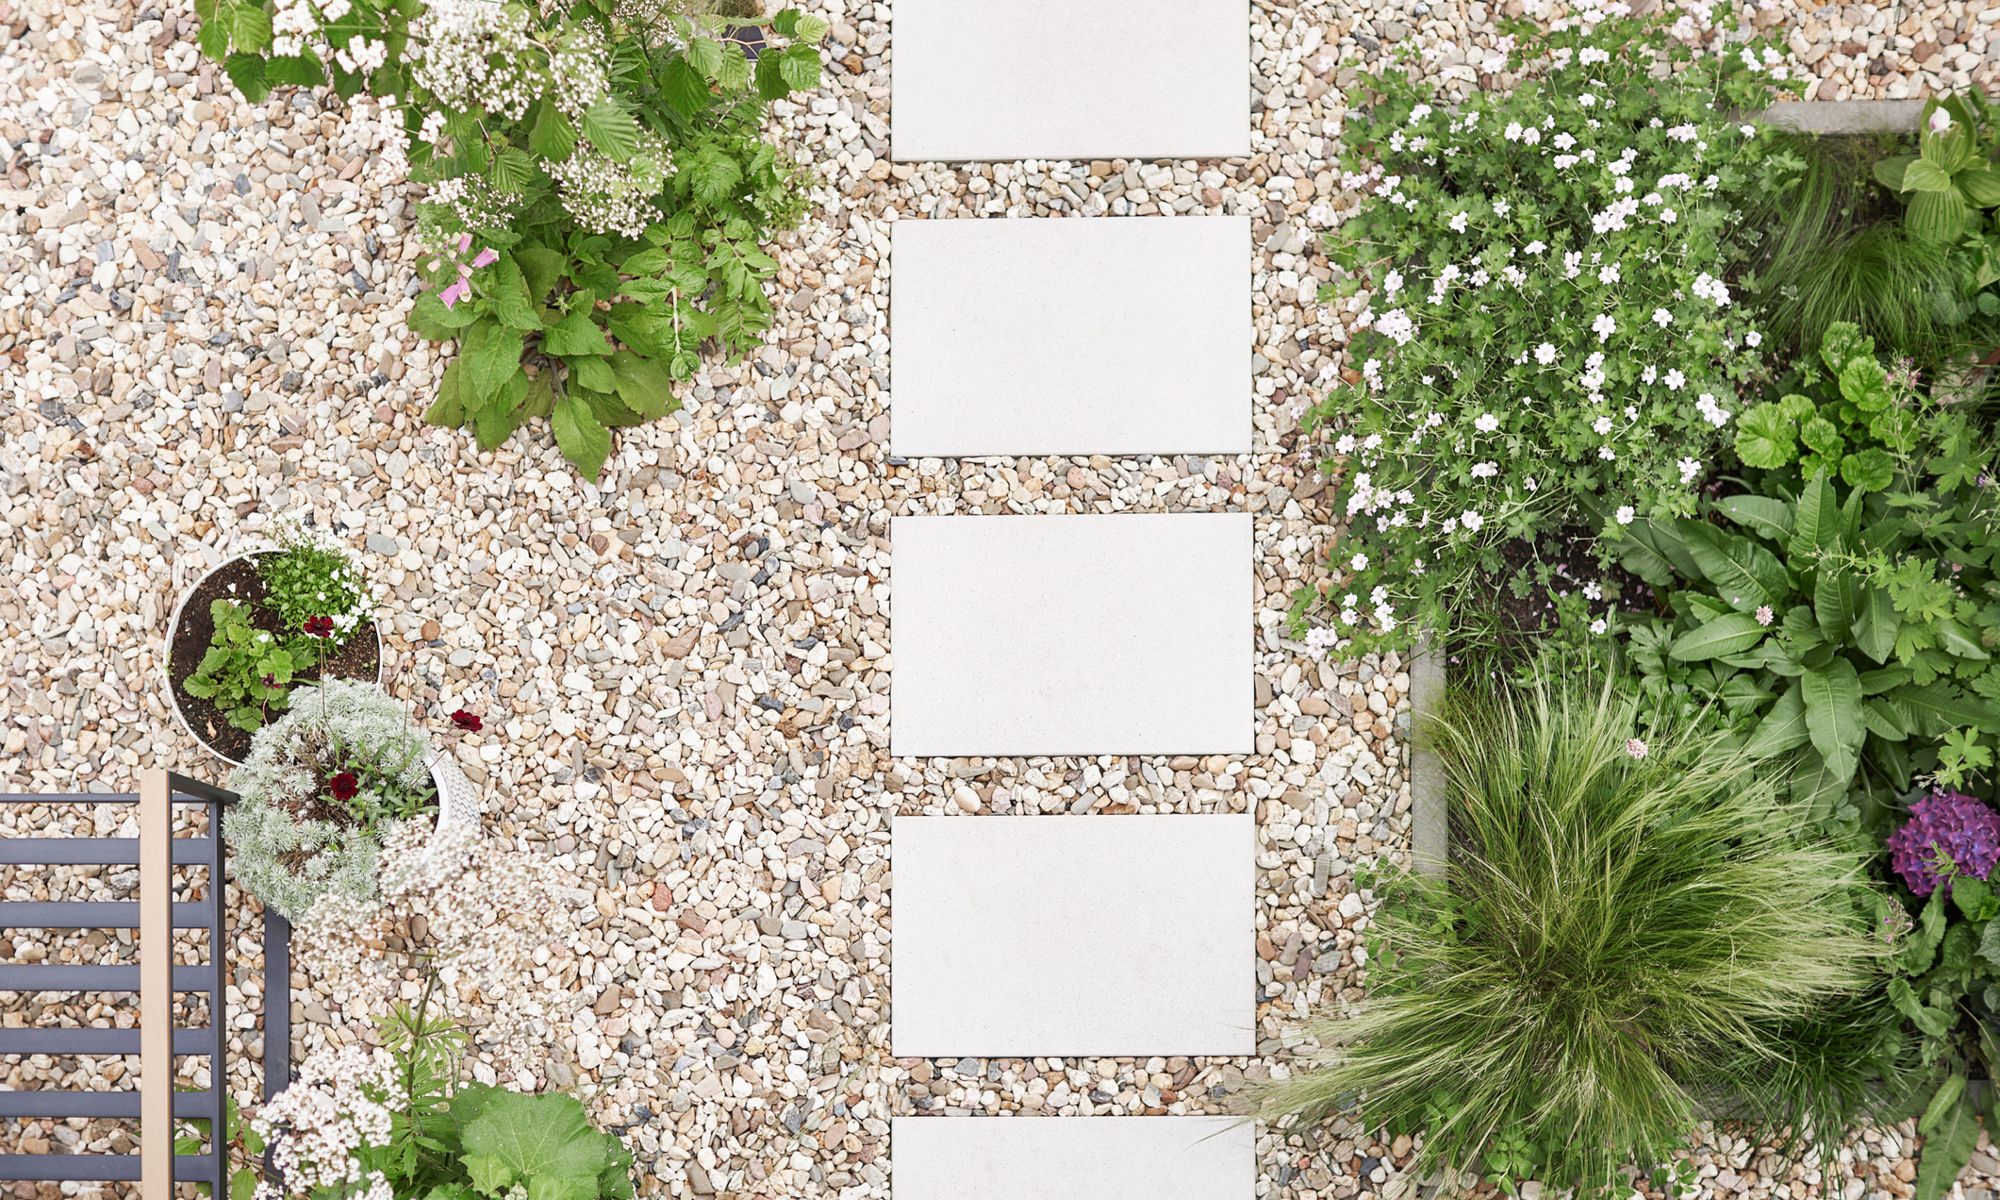 Quadratische Steinplatten bilden einen Weg durch einen mit Kies und verschiedenen Pflanzen gestalteten Vorgarten.